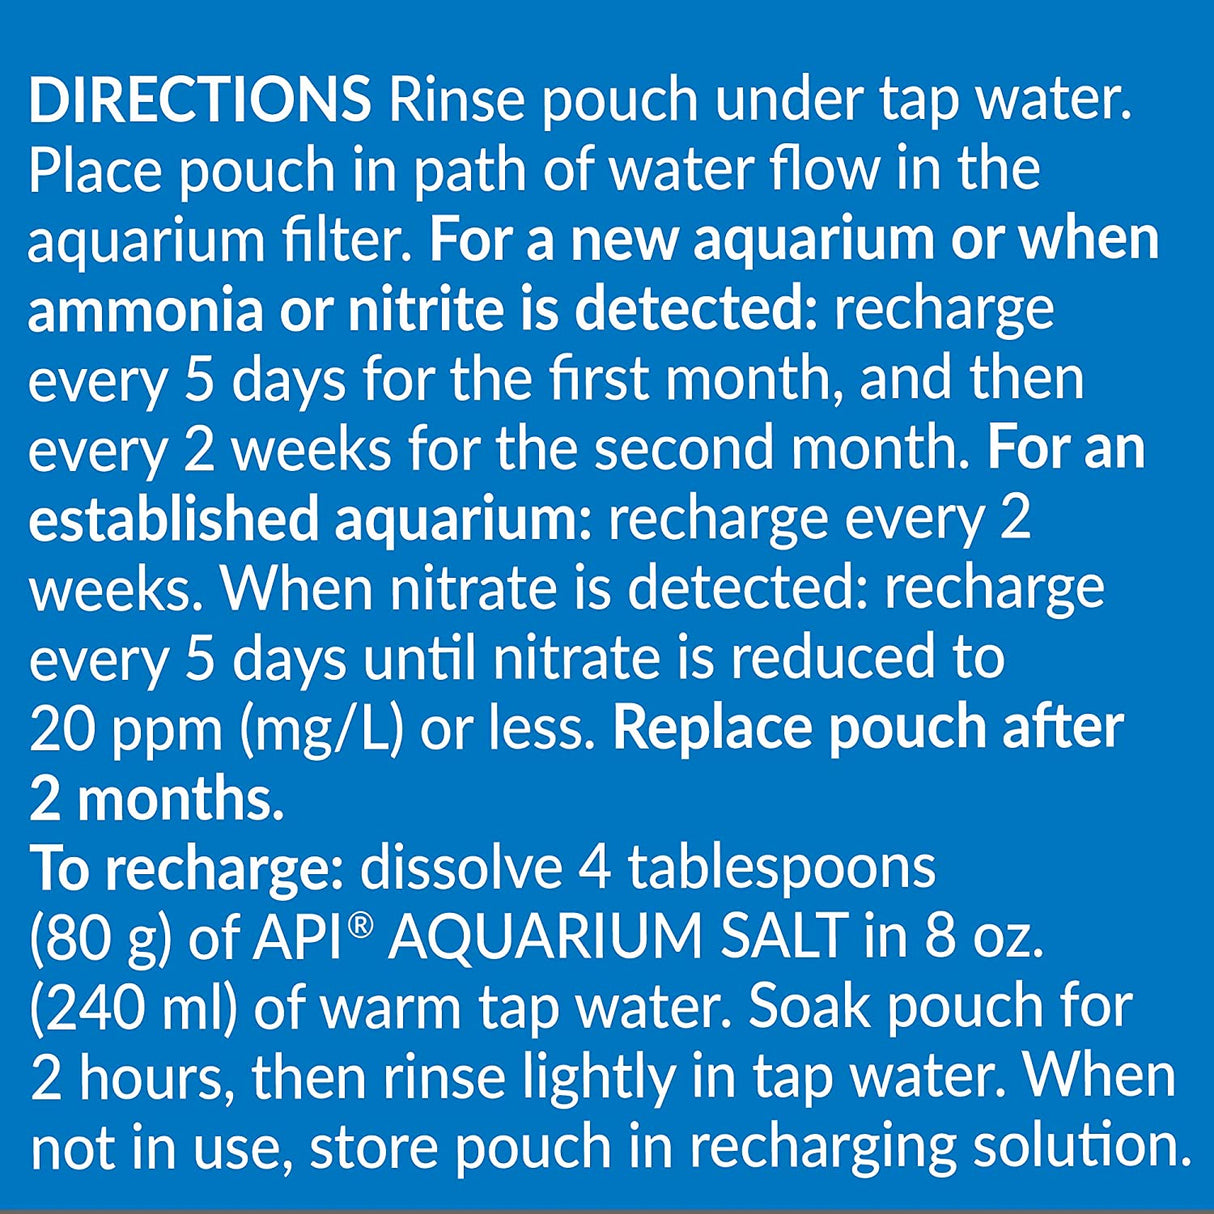 1 count API Nitra-Zorb Removes Aquarium Toxins Size 6